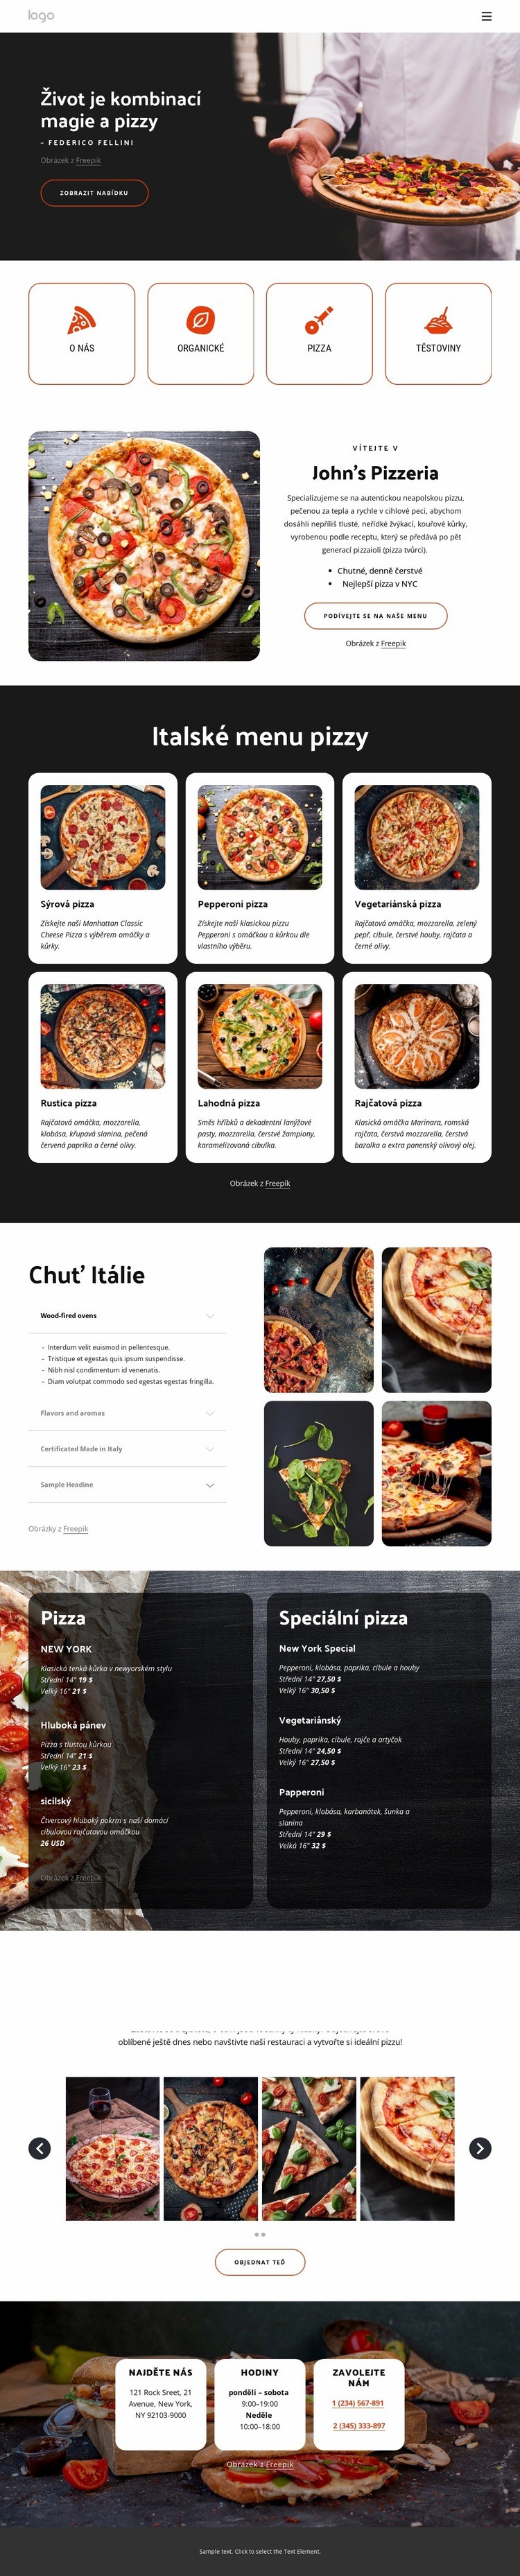 Pizza restaurace vhodná pro rodiny Webový design